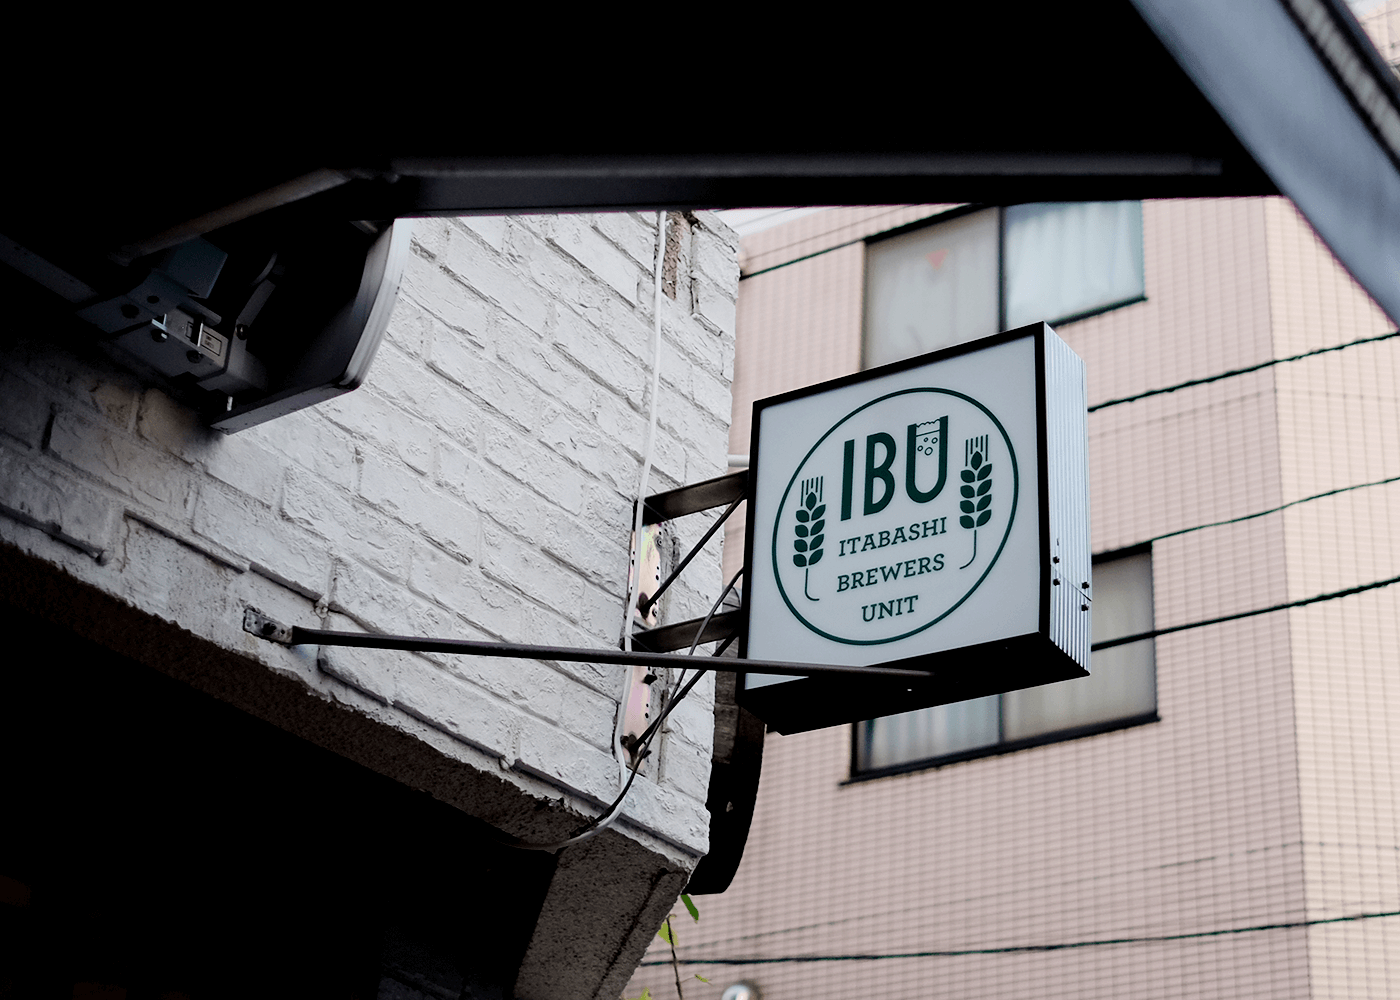 Itabashi Brewers Unit（IBU：板橋ブリュワーズユニット）